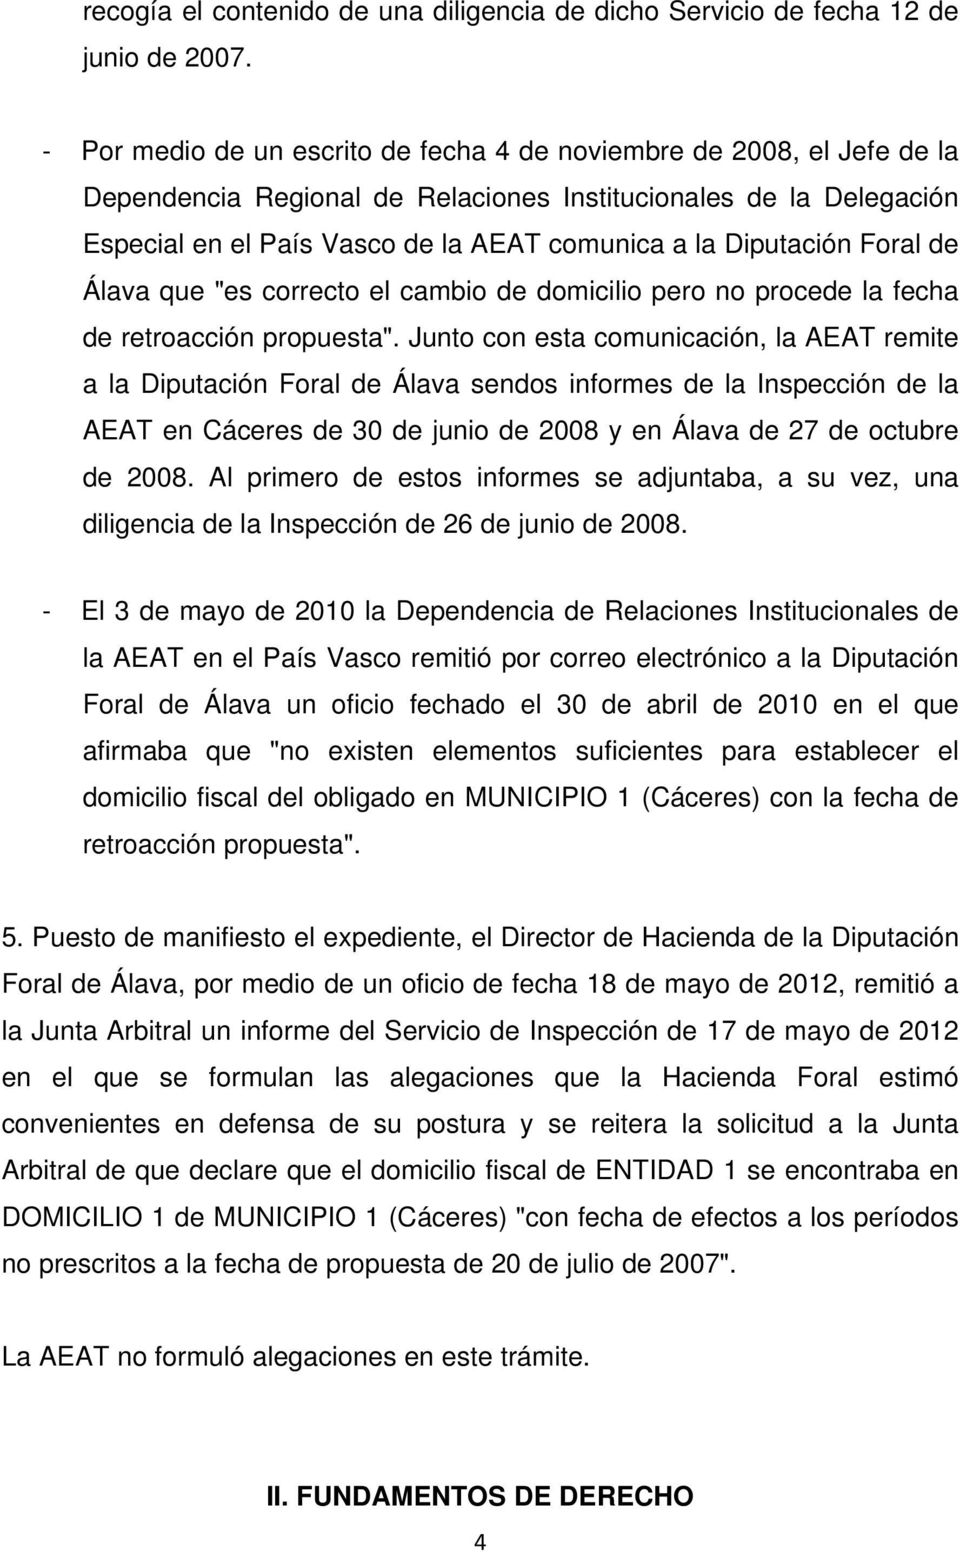 Diputación Foral de Álava que "es correcto el cambio de domicilio pero no procede la fecha de retroacción propuesta".